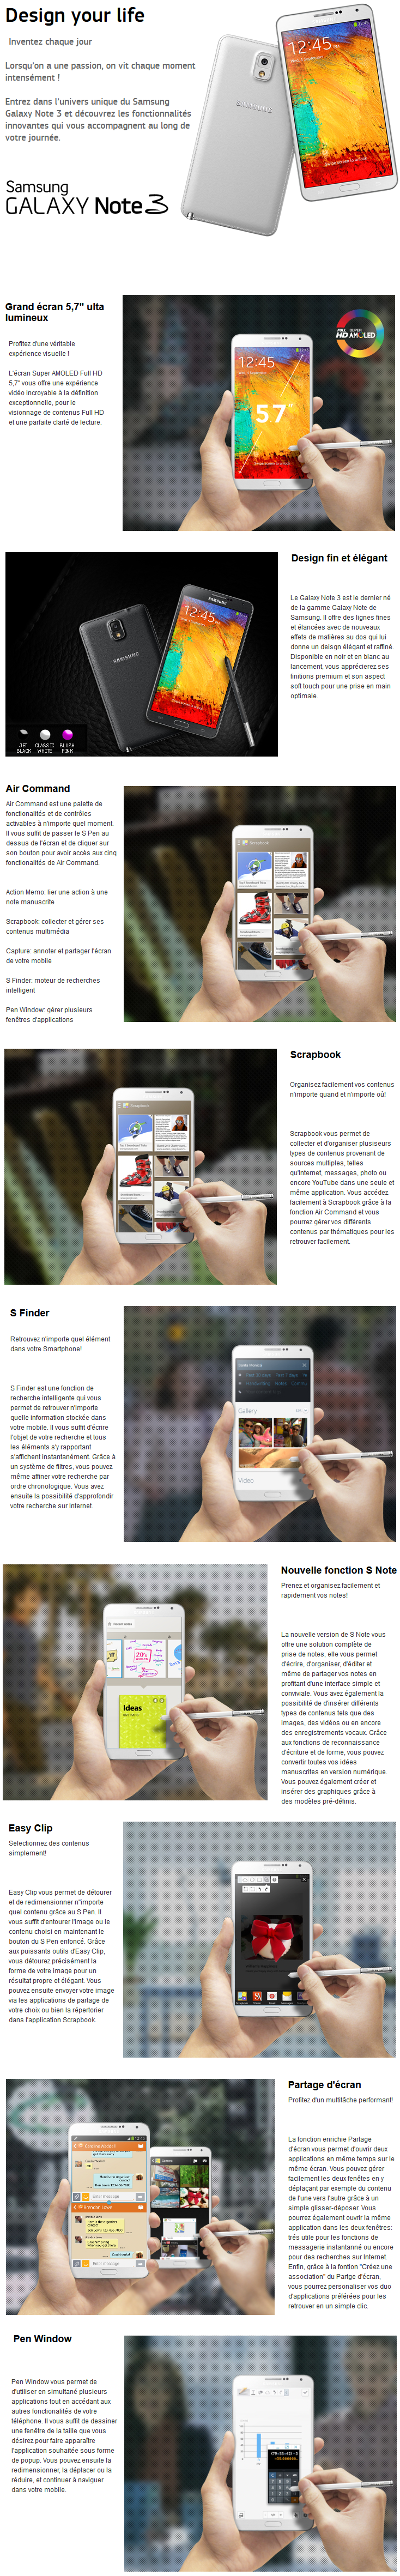 Acheter Samsung Galaxy Note 3 Maroc